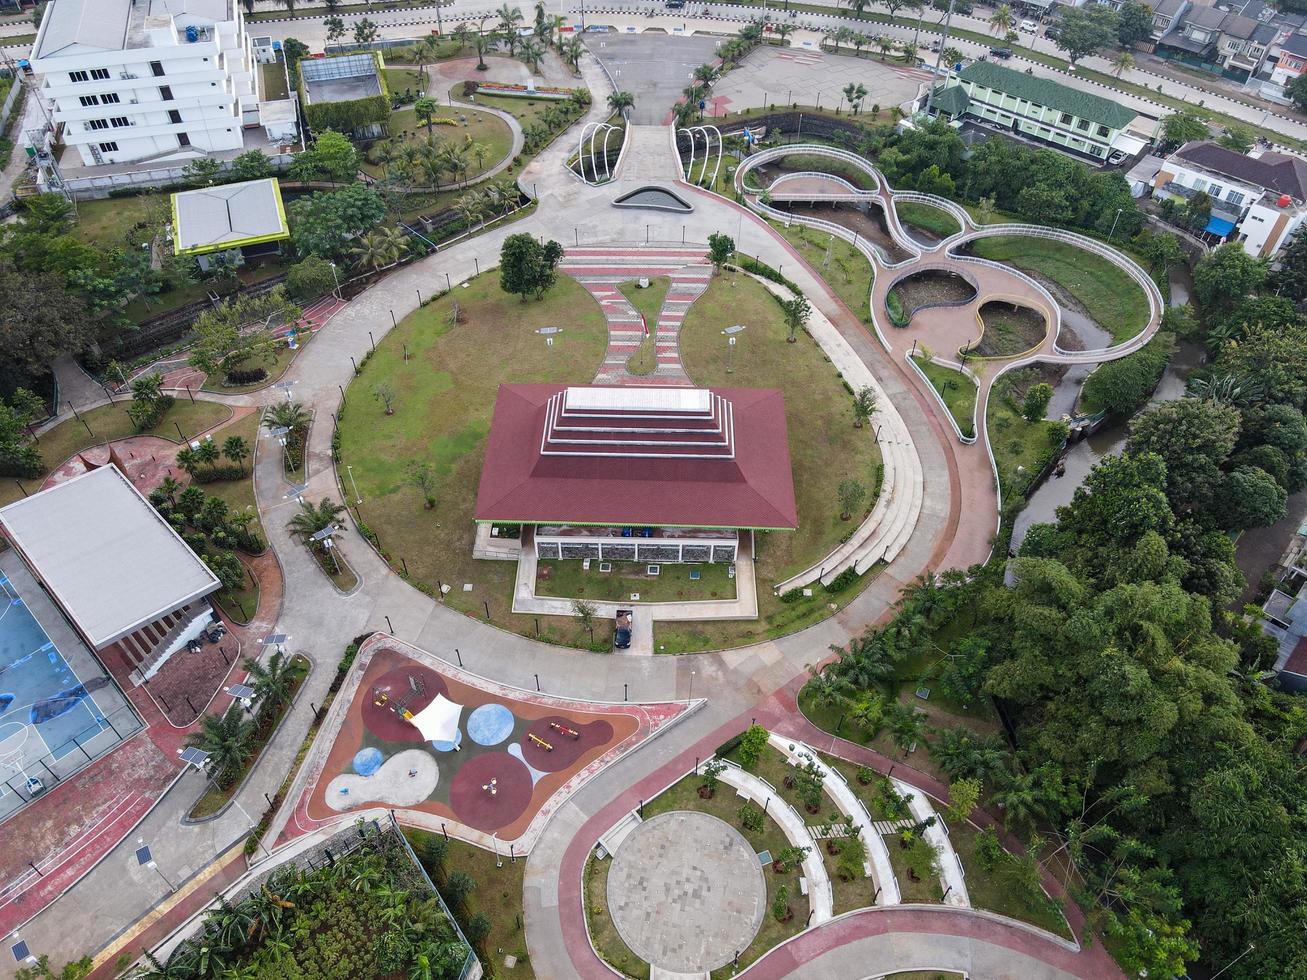 depok, indonesien 2021 - Luftaufnahme des Spielplatzhofs im öffentlichen Park, umgeben von grünen Bäumen foto